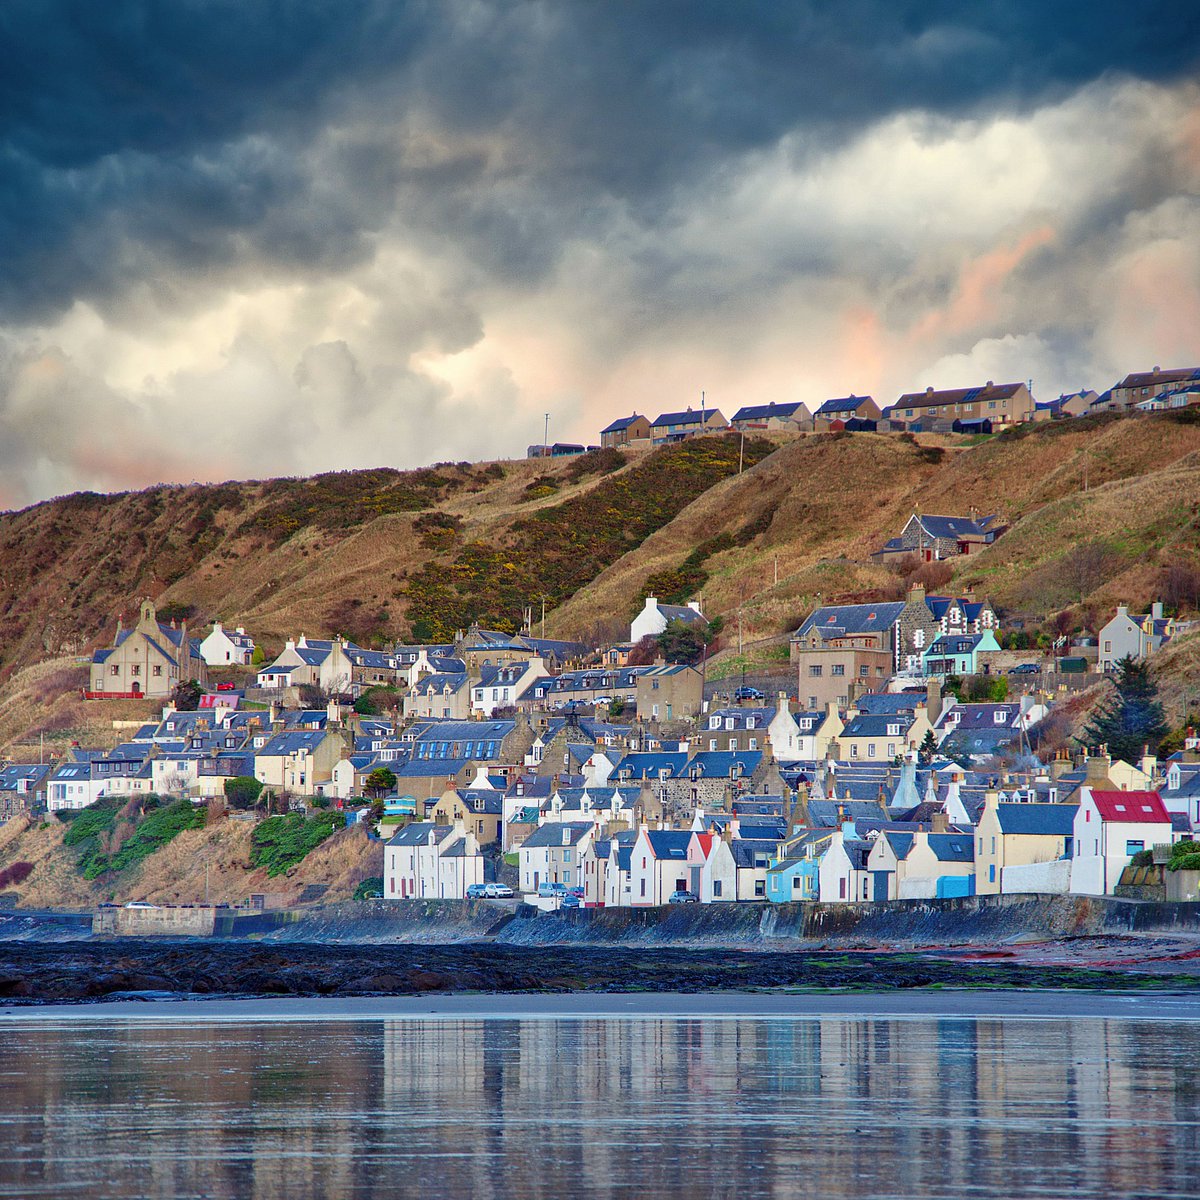 Gardenstown, Aberdeenshire @visitabdn @VisitScotland @ScotsMagazine #ThePhotoHour #StormHour #Aberdeenshire #Scotland